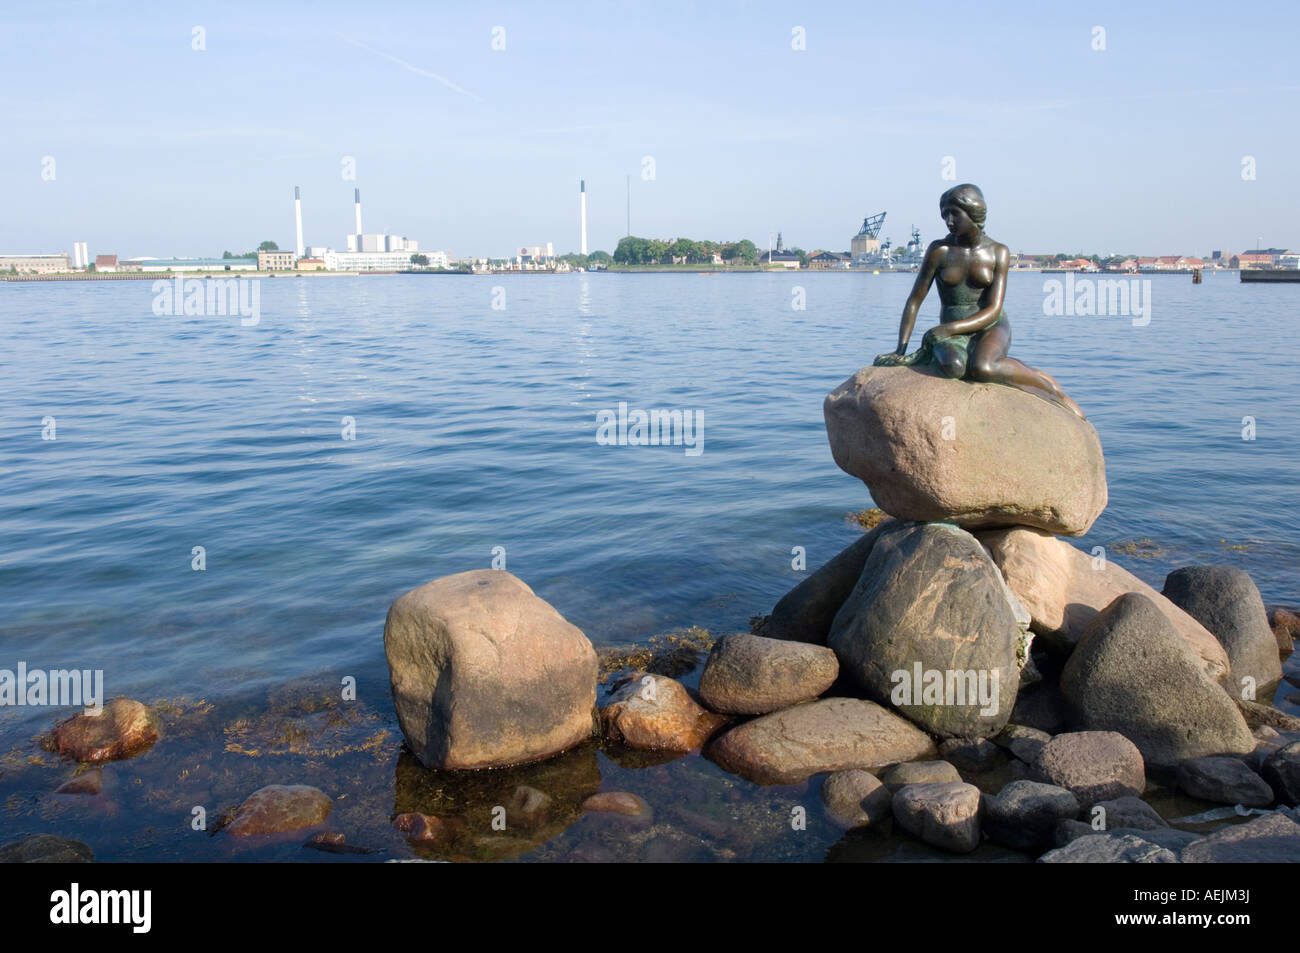 Little mermaid, landmark of Copenhagen, Denmark Stock Photo - Alamy